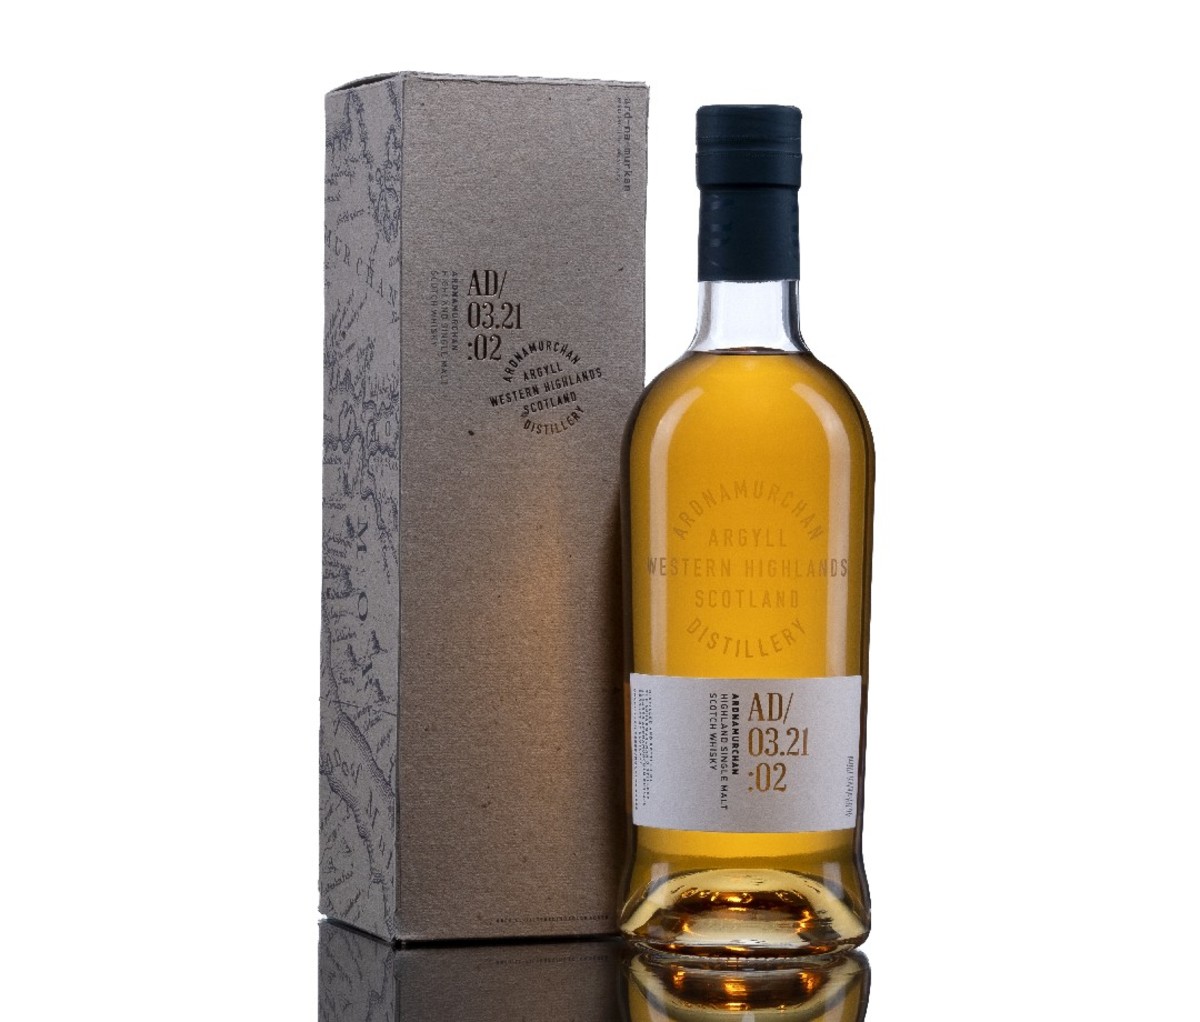 Een doos voor Ardnamurchan Small Batch AD/03.21:01 whisky, staande naast een volle fles.